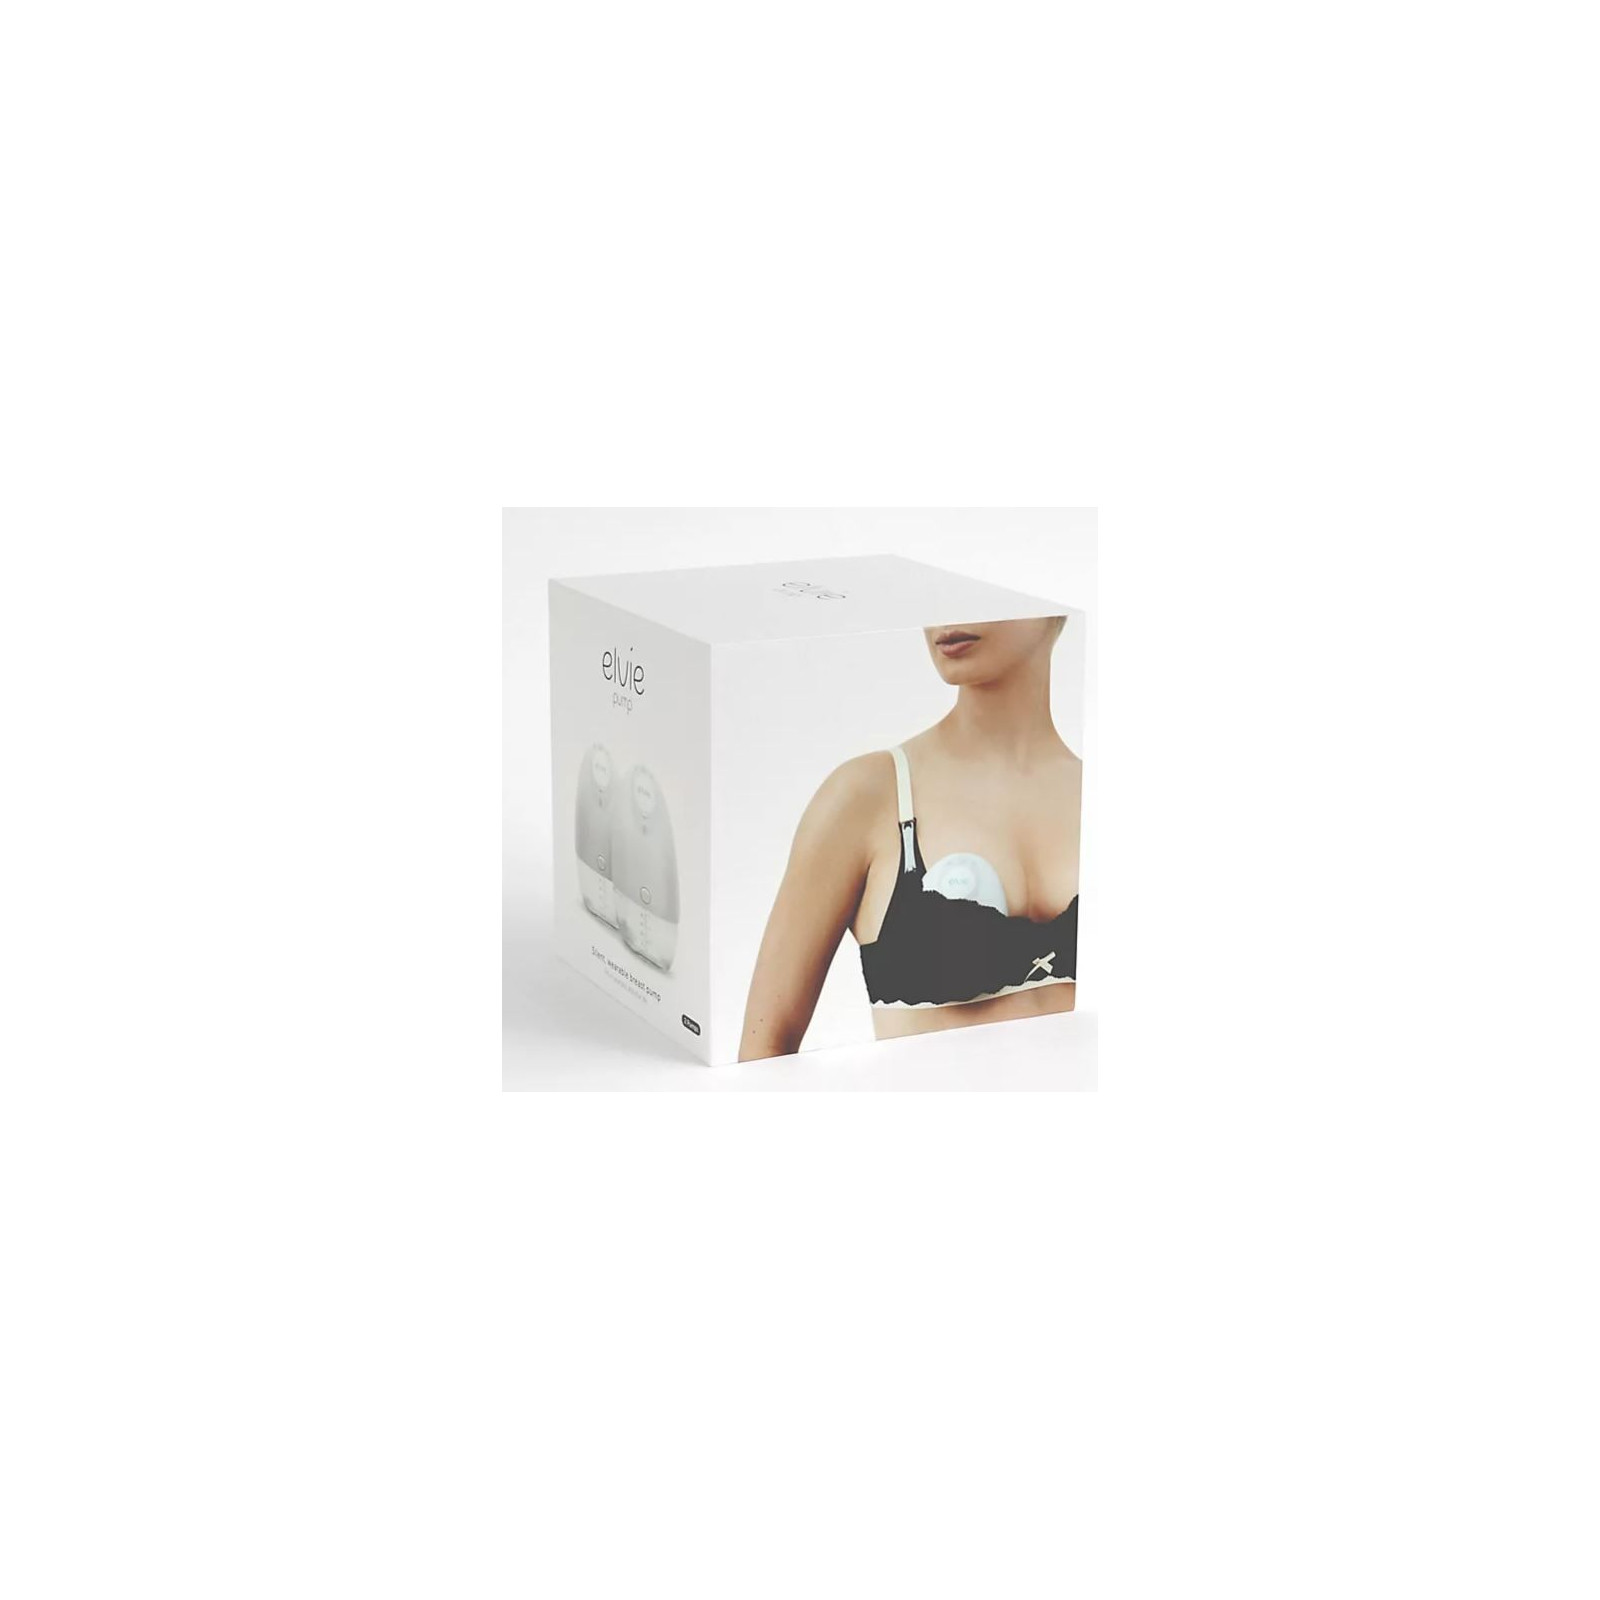 https://amedsupplies.com/1373-original/elvie-double-electric-wearable-breast-pump.jpg